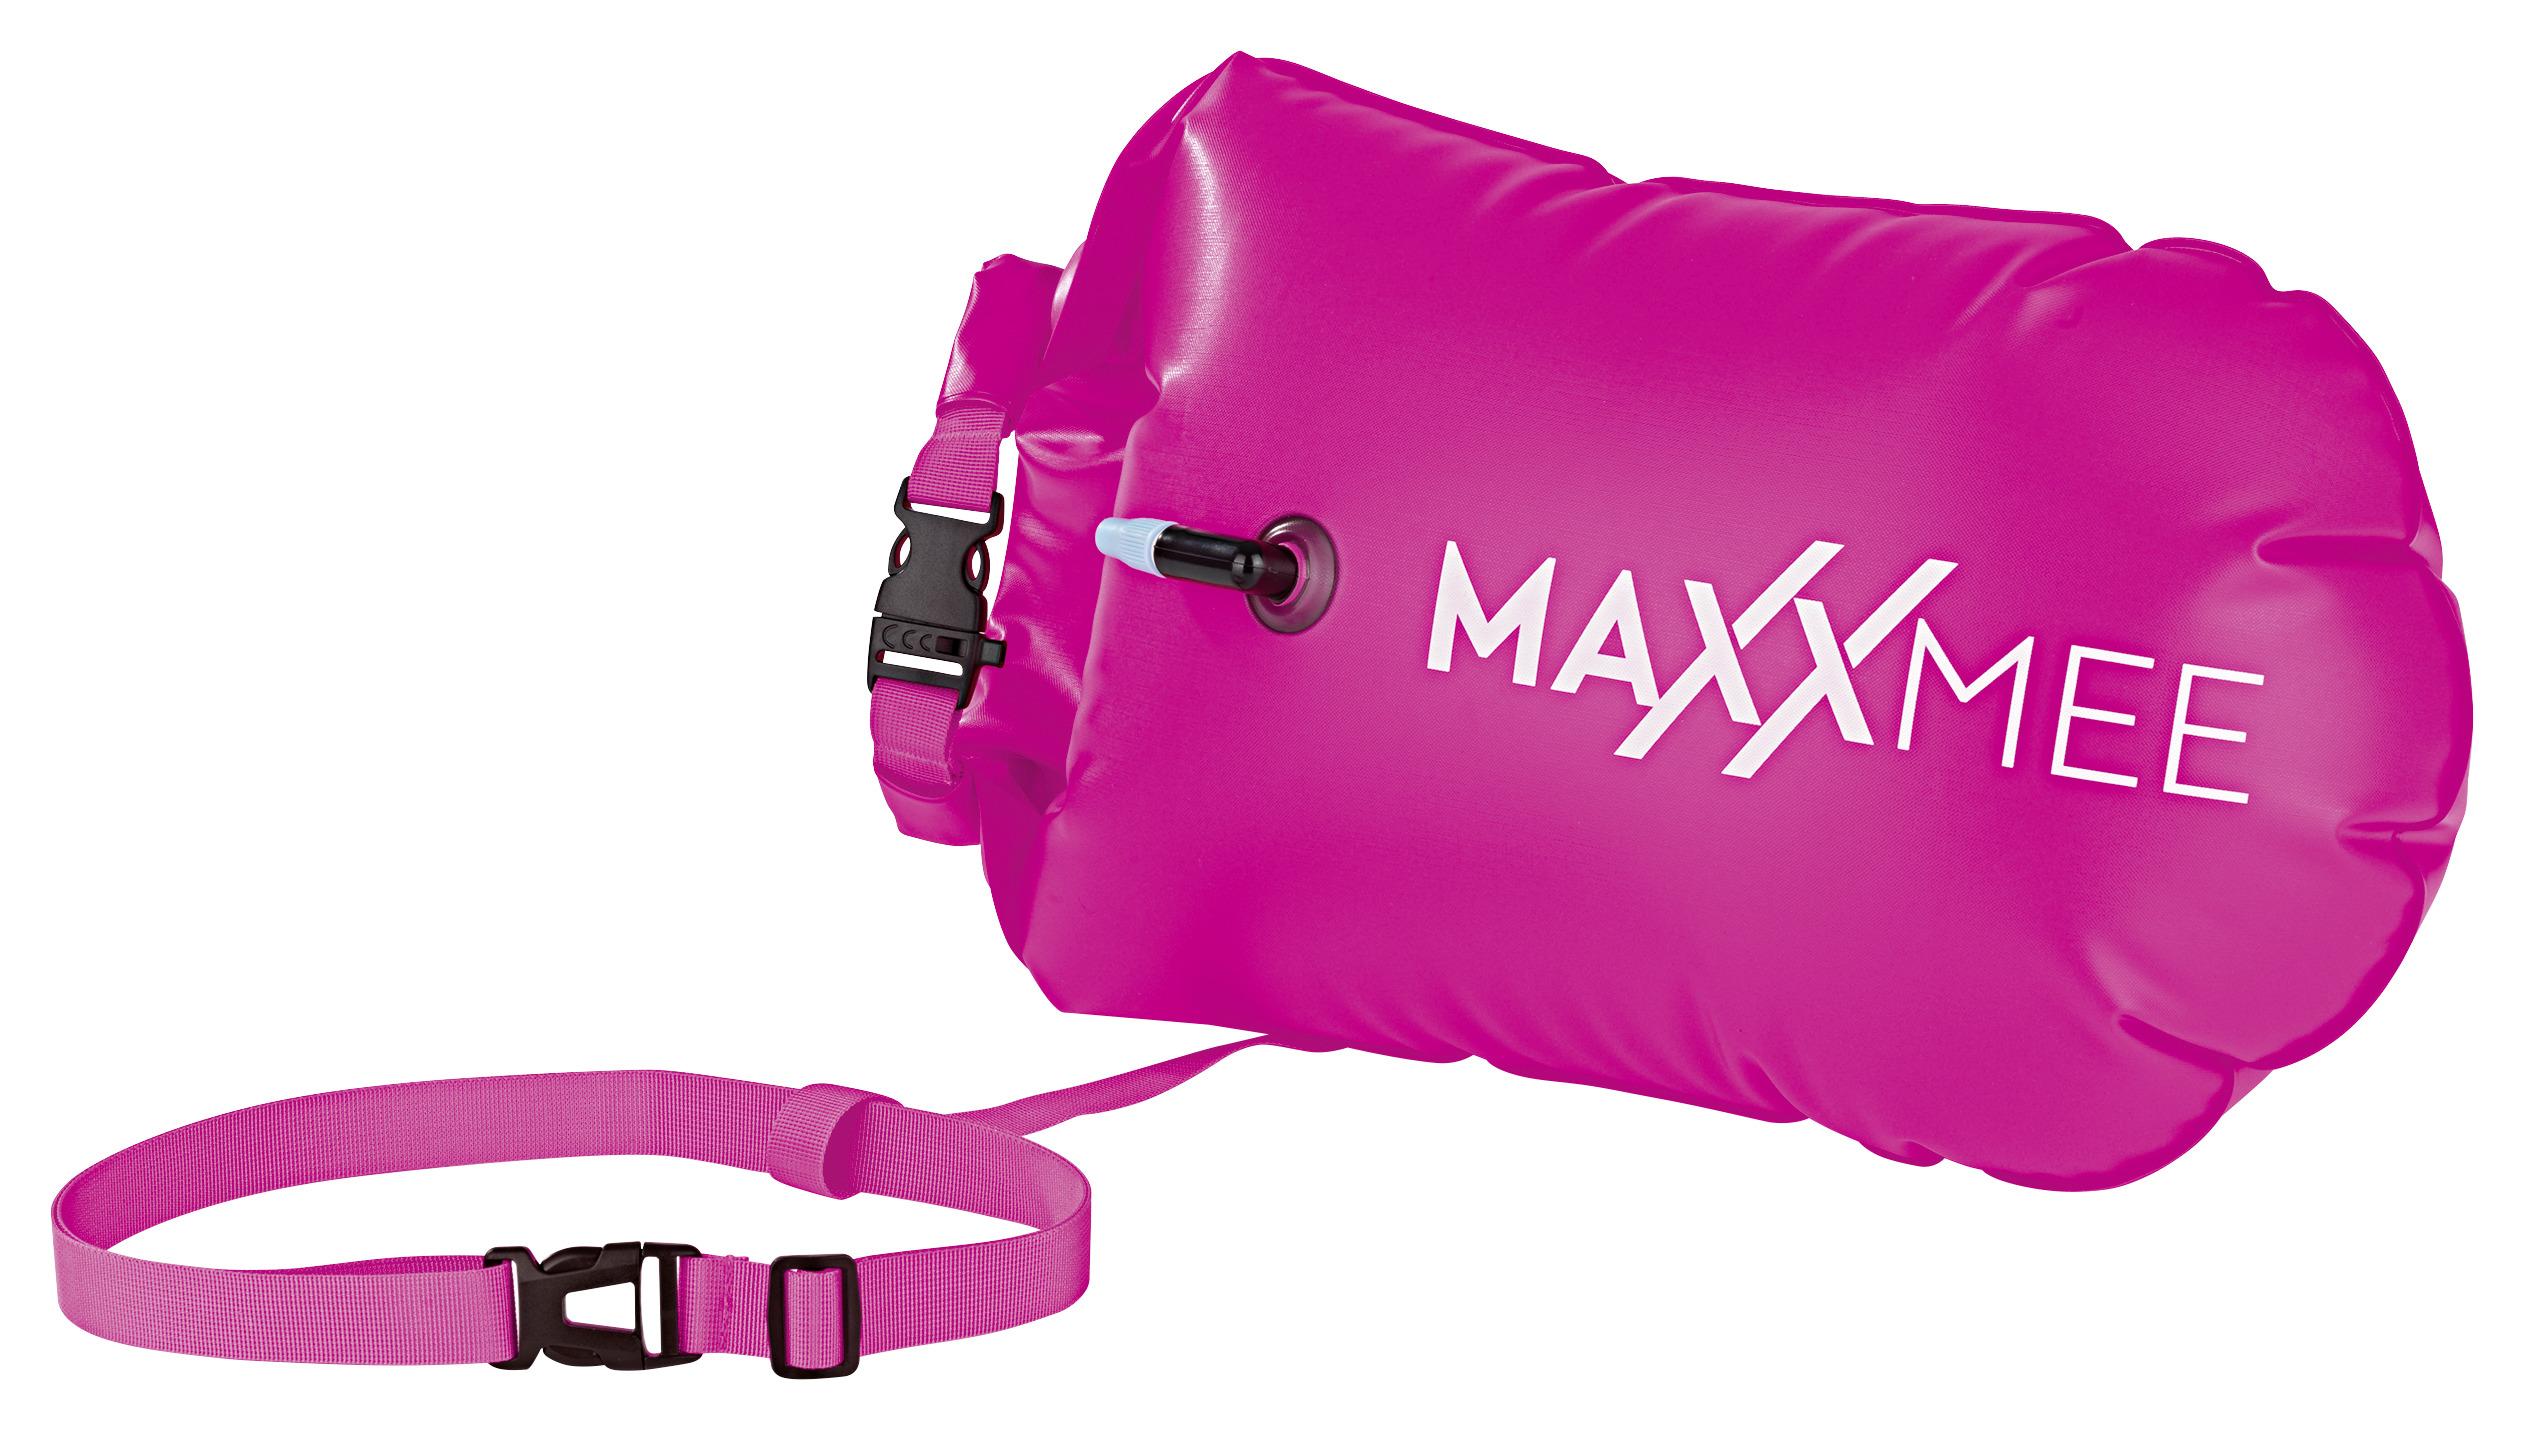 Schwimmkissen Maxxmee Schwimmboje Pink - Pink, Basics, Kunststoff (37,5/72cm) - TV - Unser Original